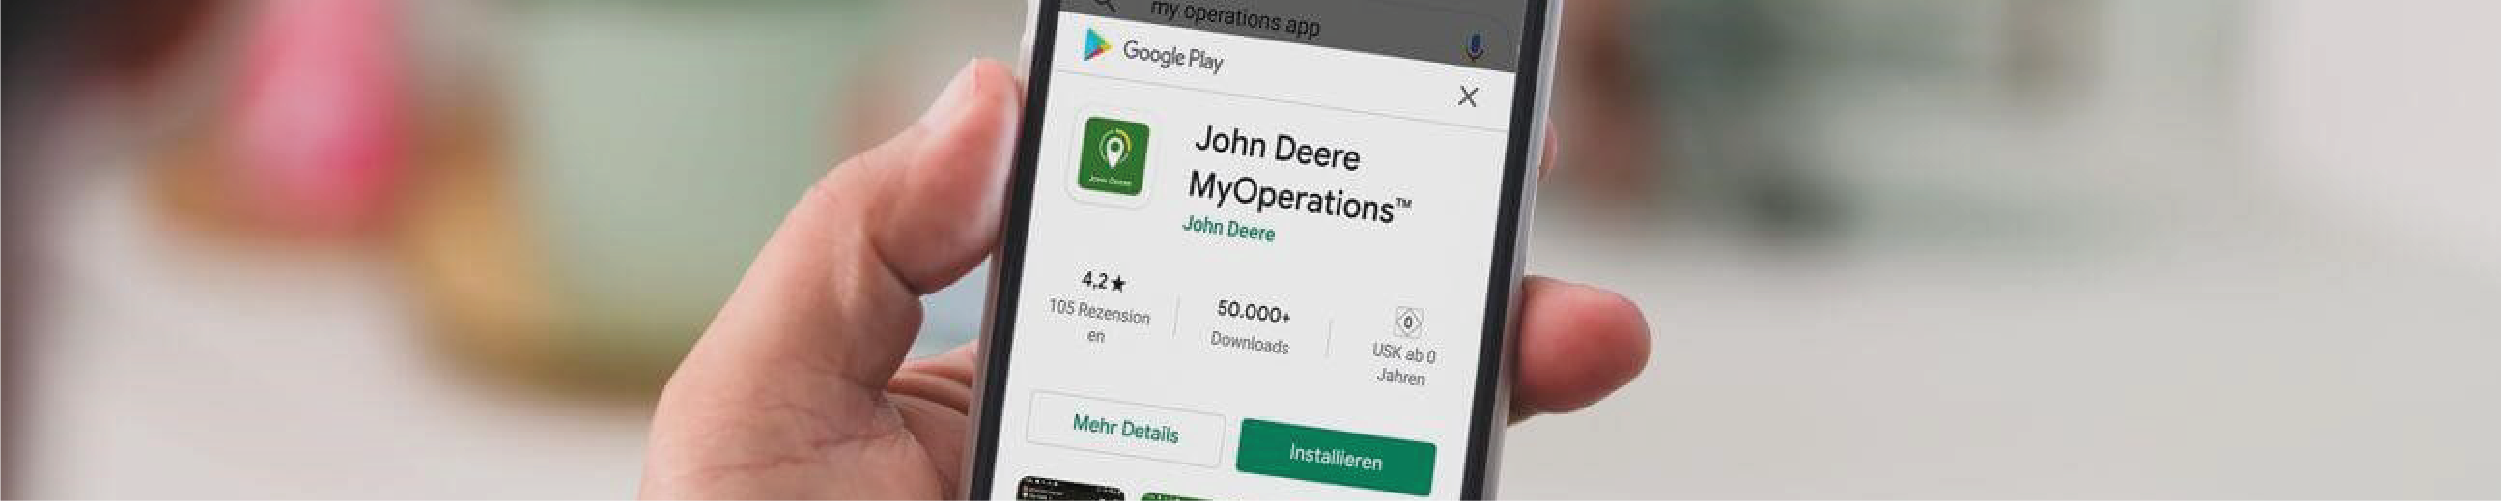 MyOperations App John Deere